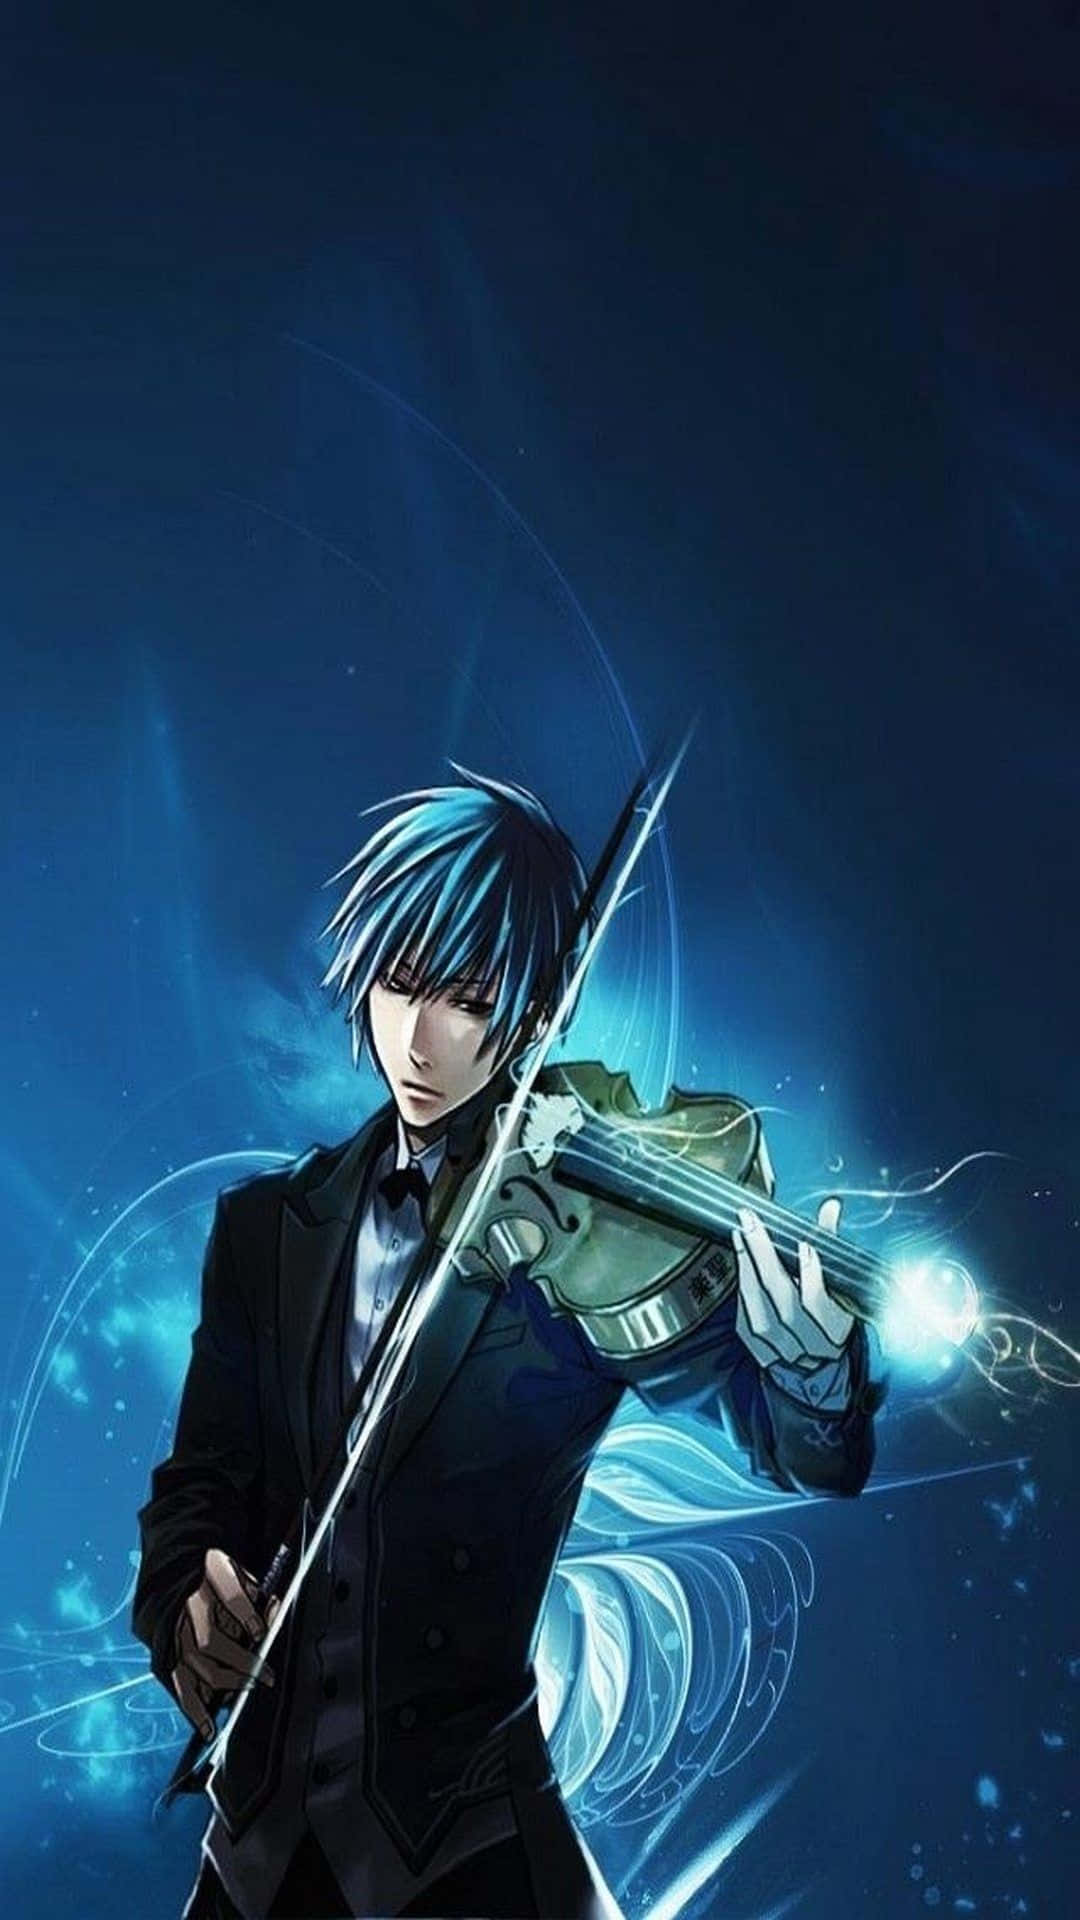 Cool Anime Character Anime Boy Playing Violin Wallpaper